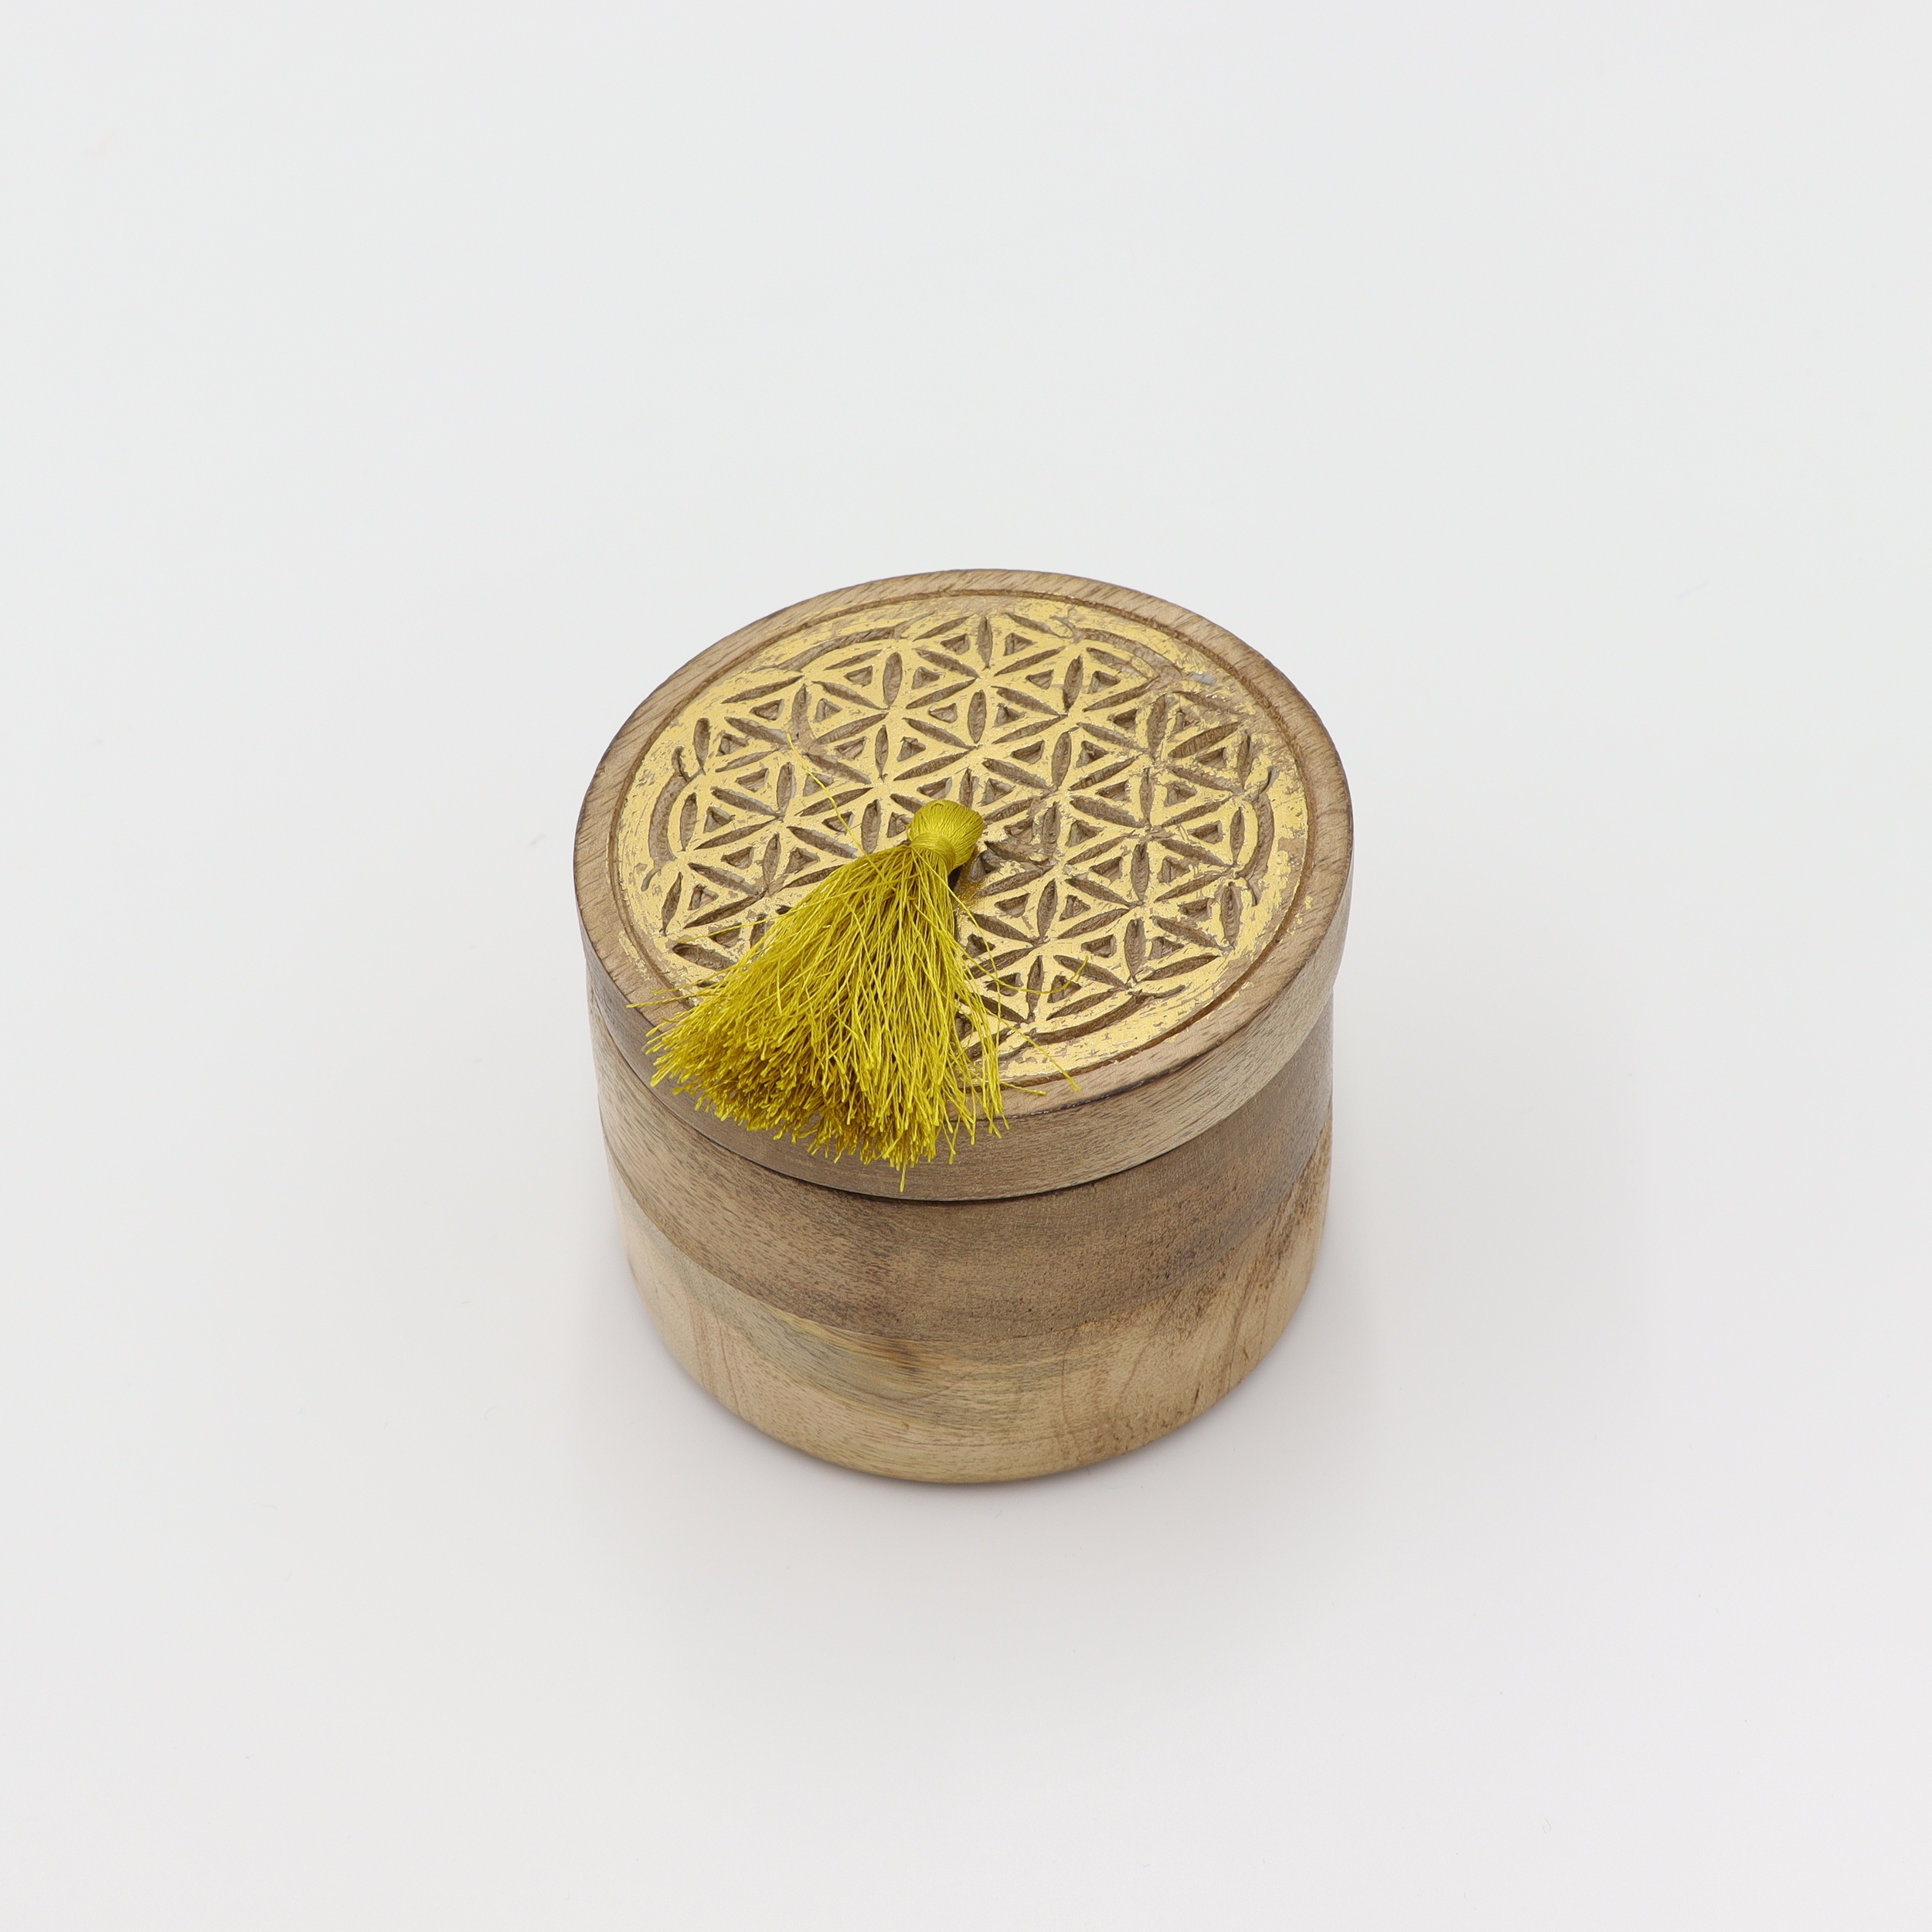 Dose aus Holz - Blume des Lebens - goldfarbene Schnitzerei - runder abnehmbarer Deckel mit gelben Bommel - M